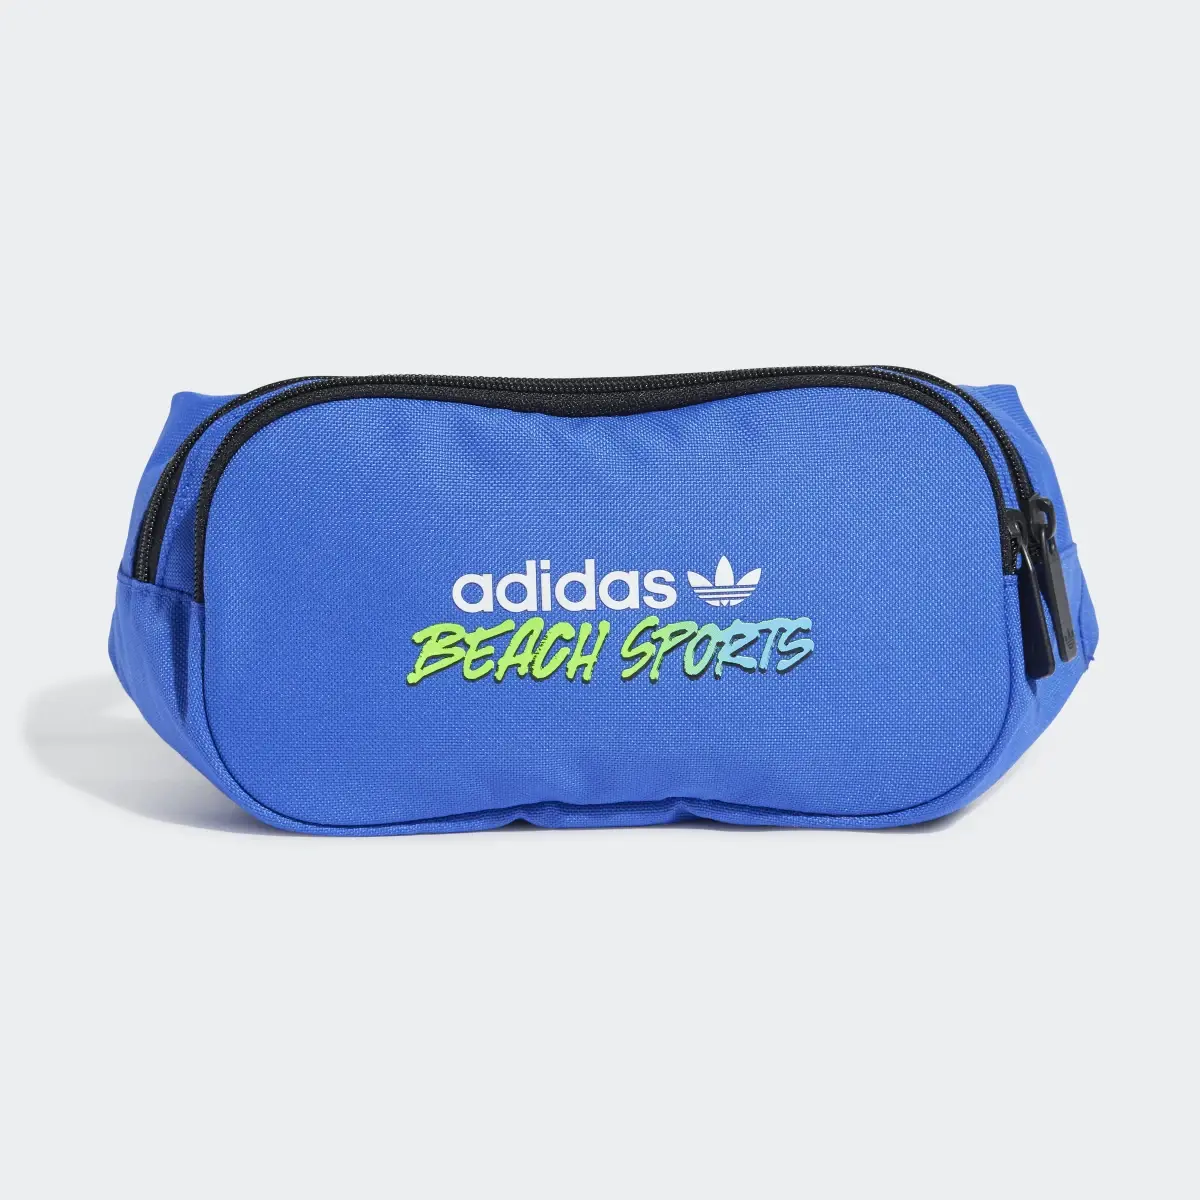 Adidas Beach Sports Waist Bag. 2